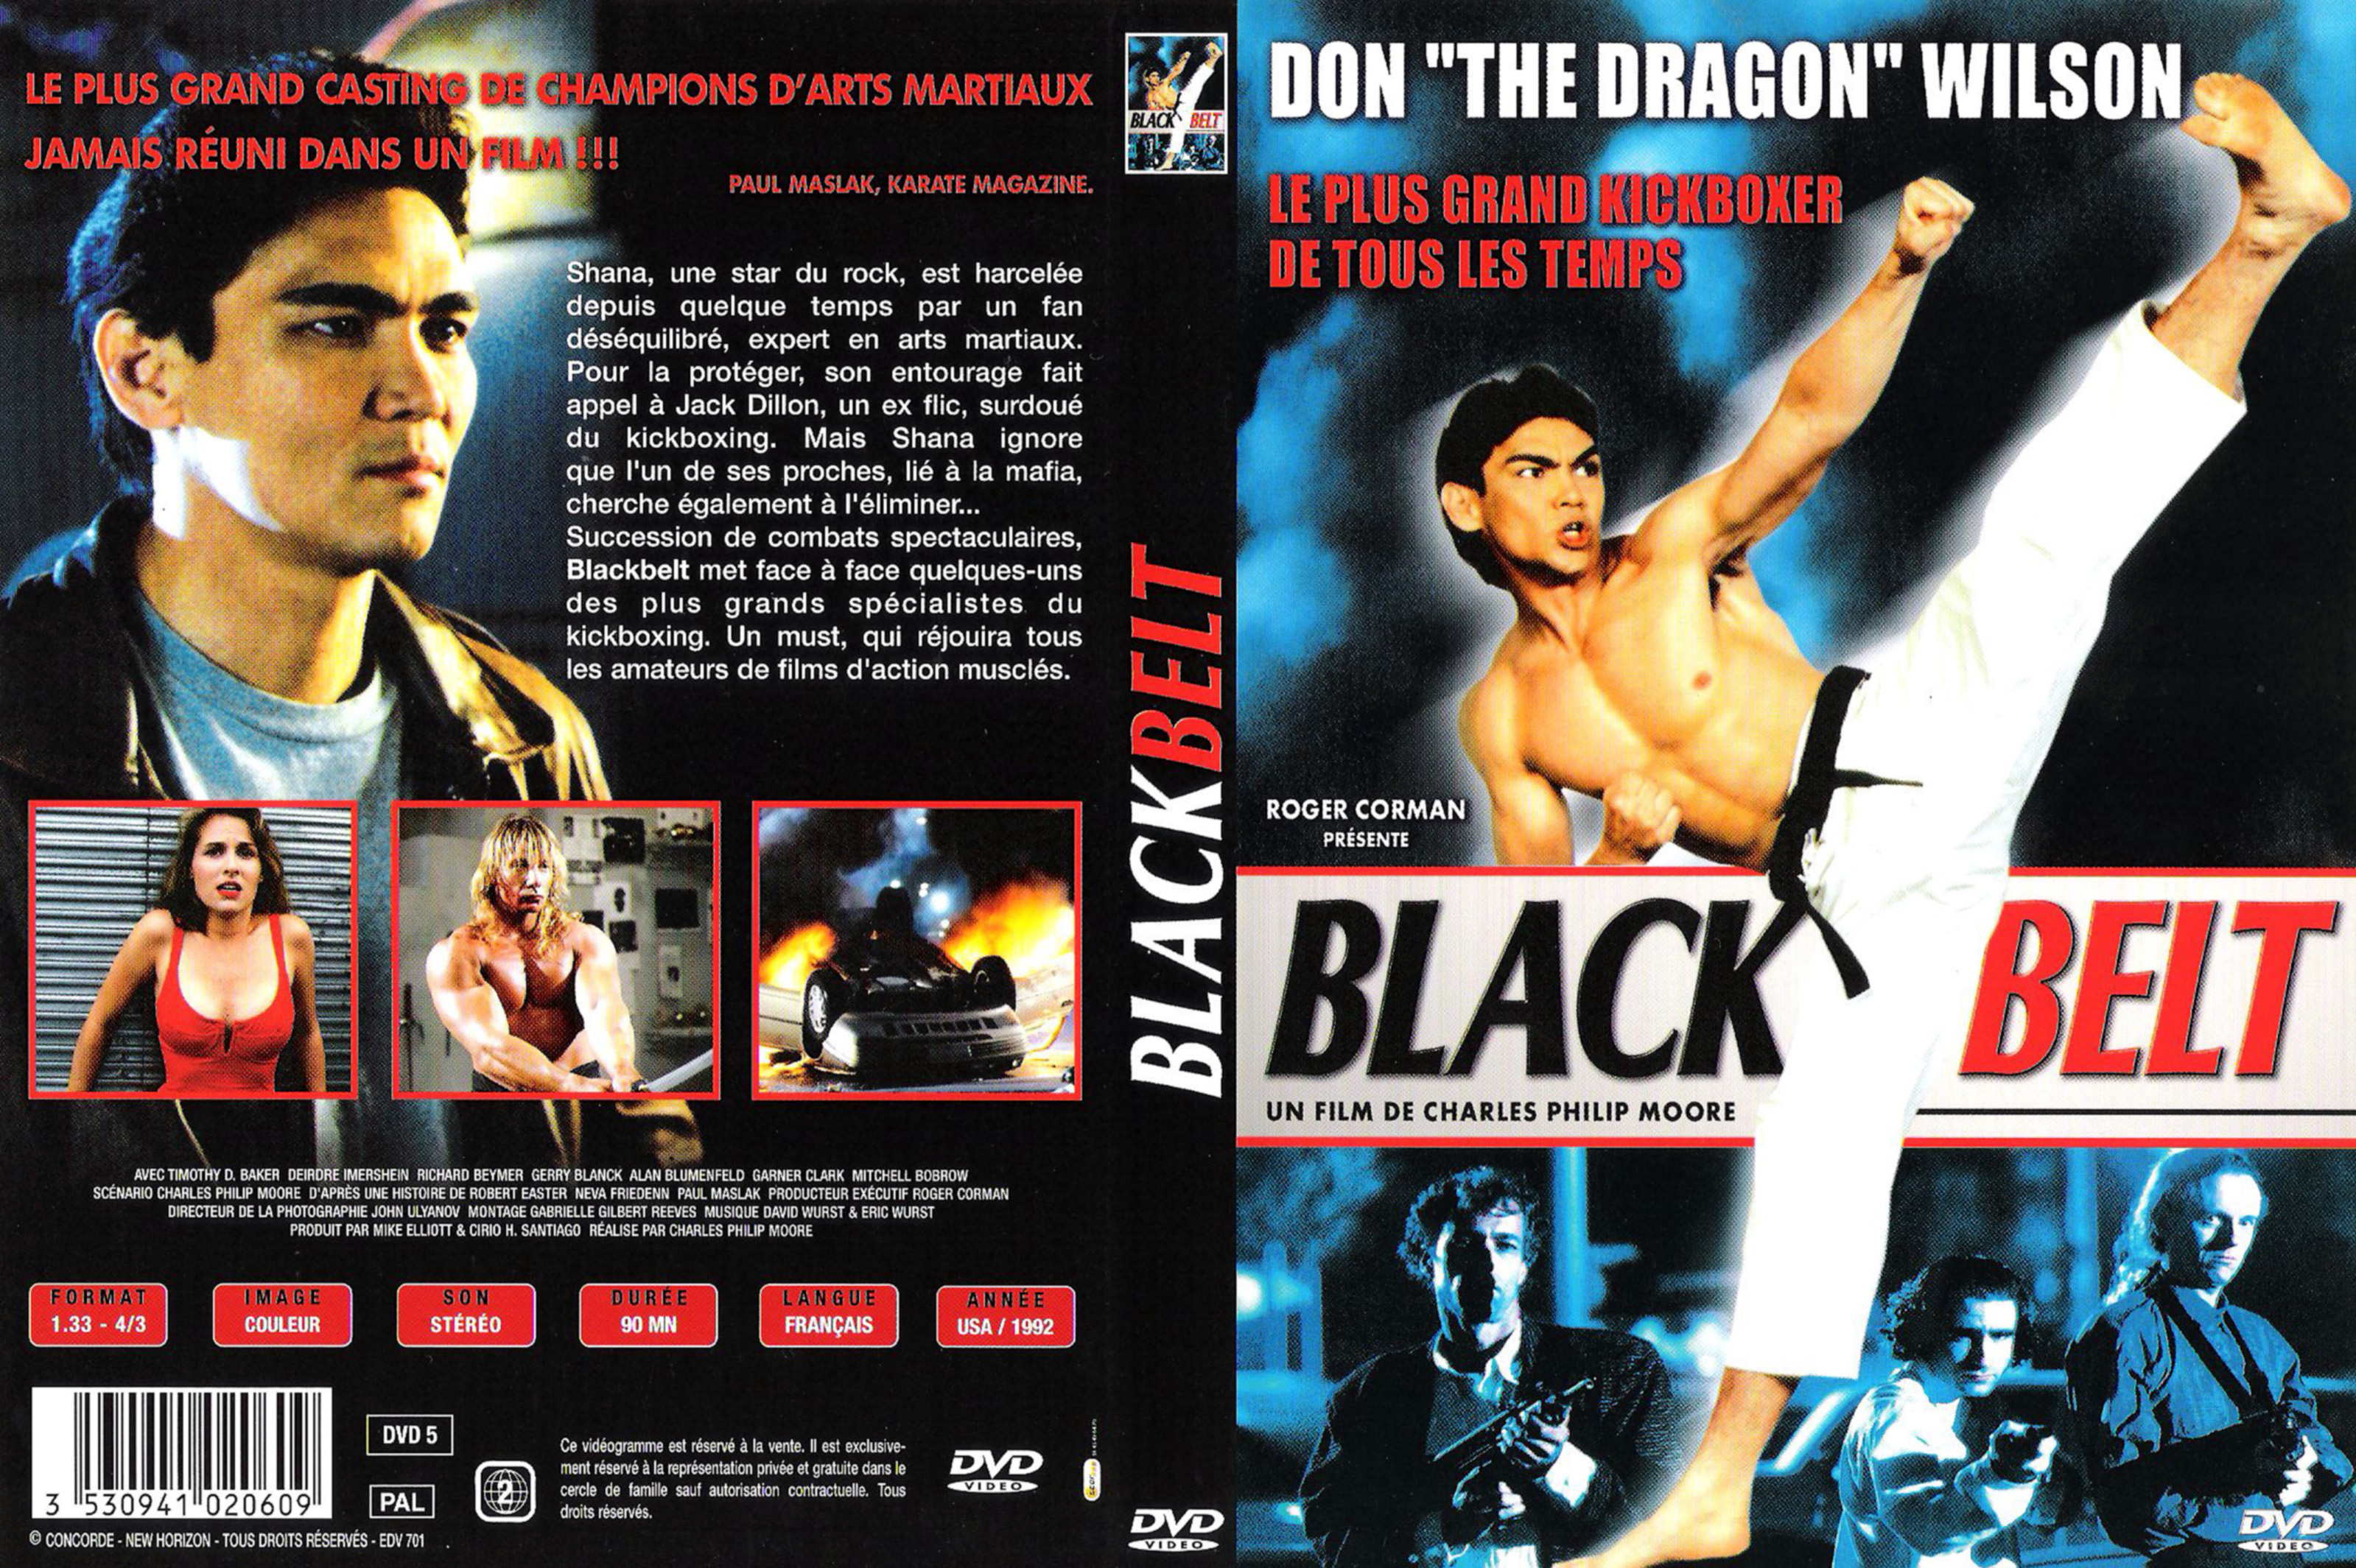 Jaquette DVD Black belt